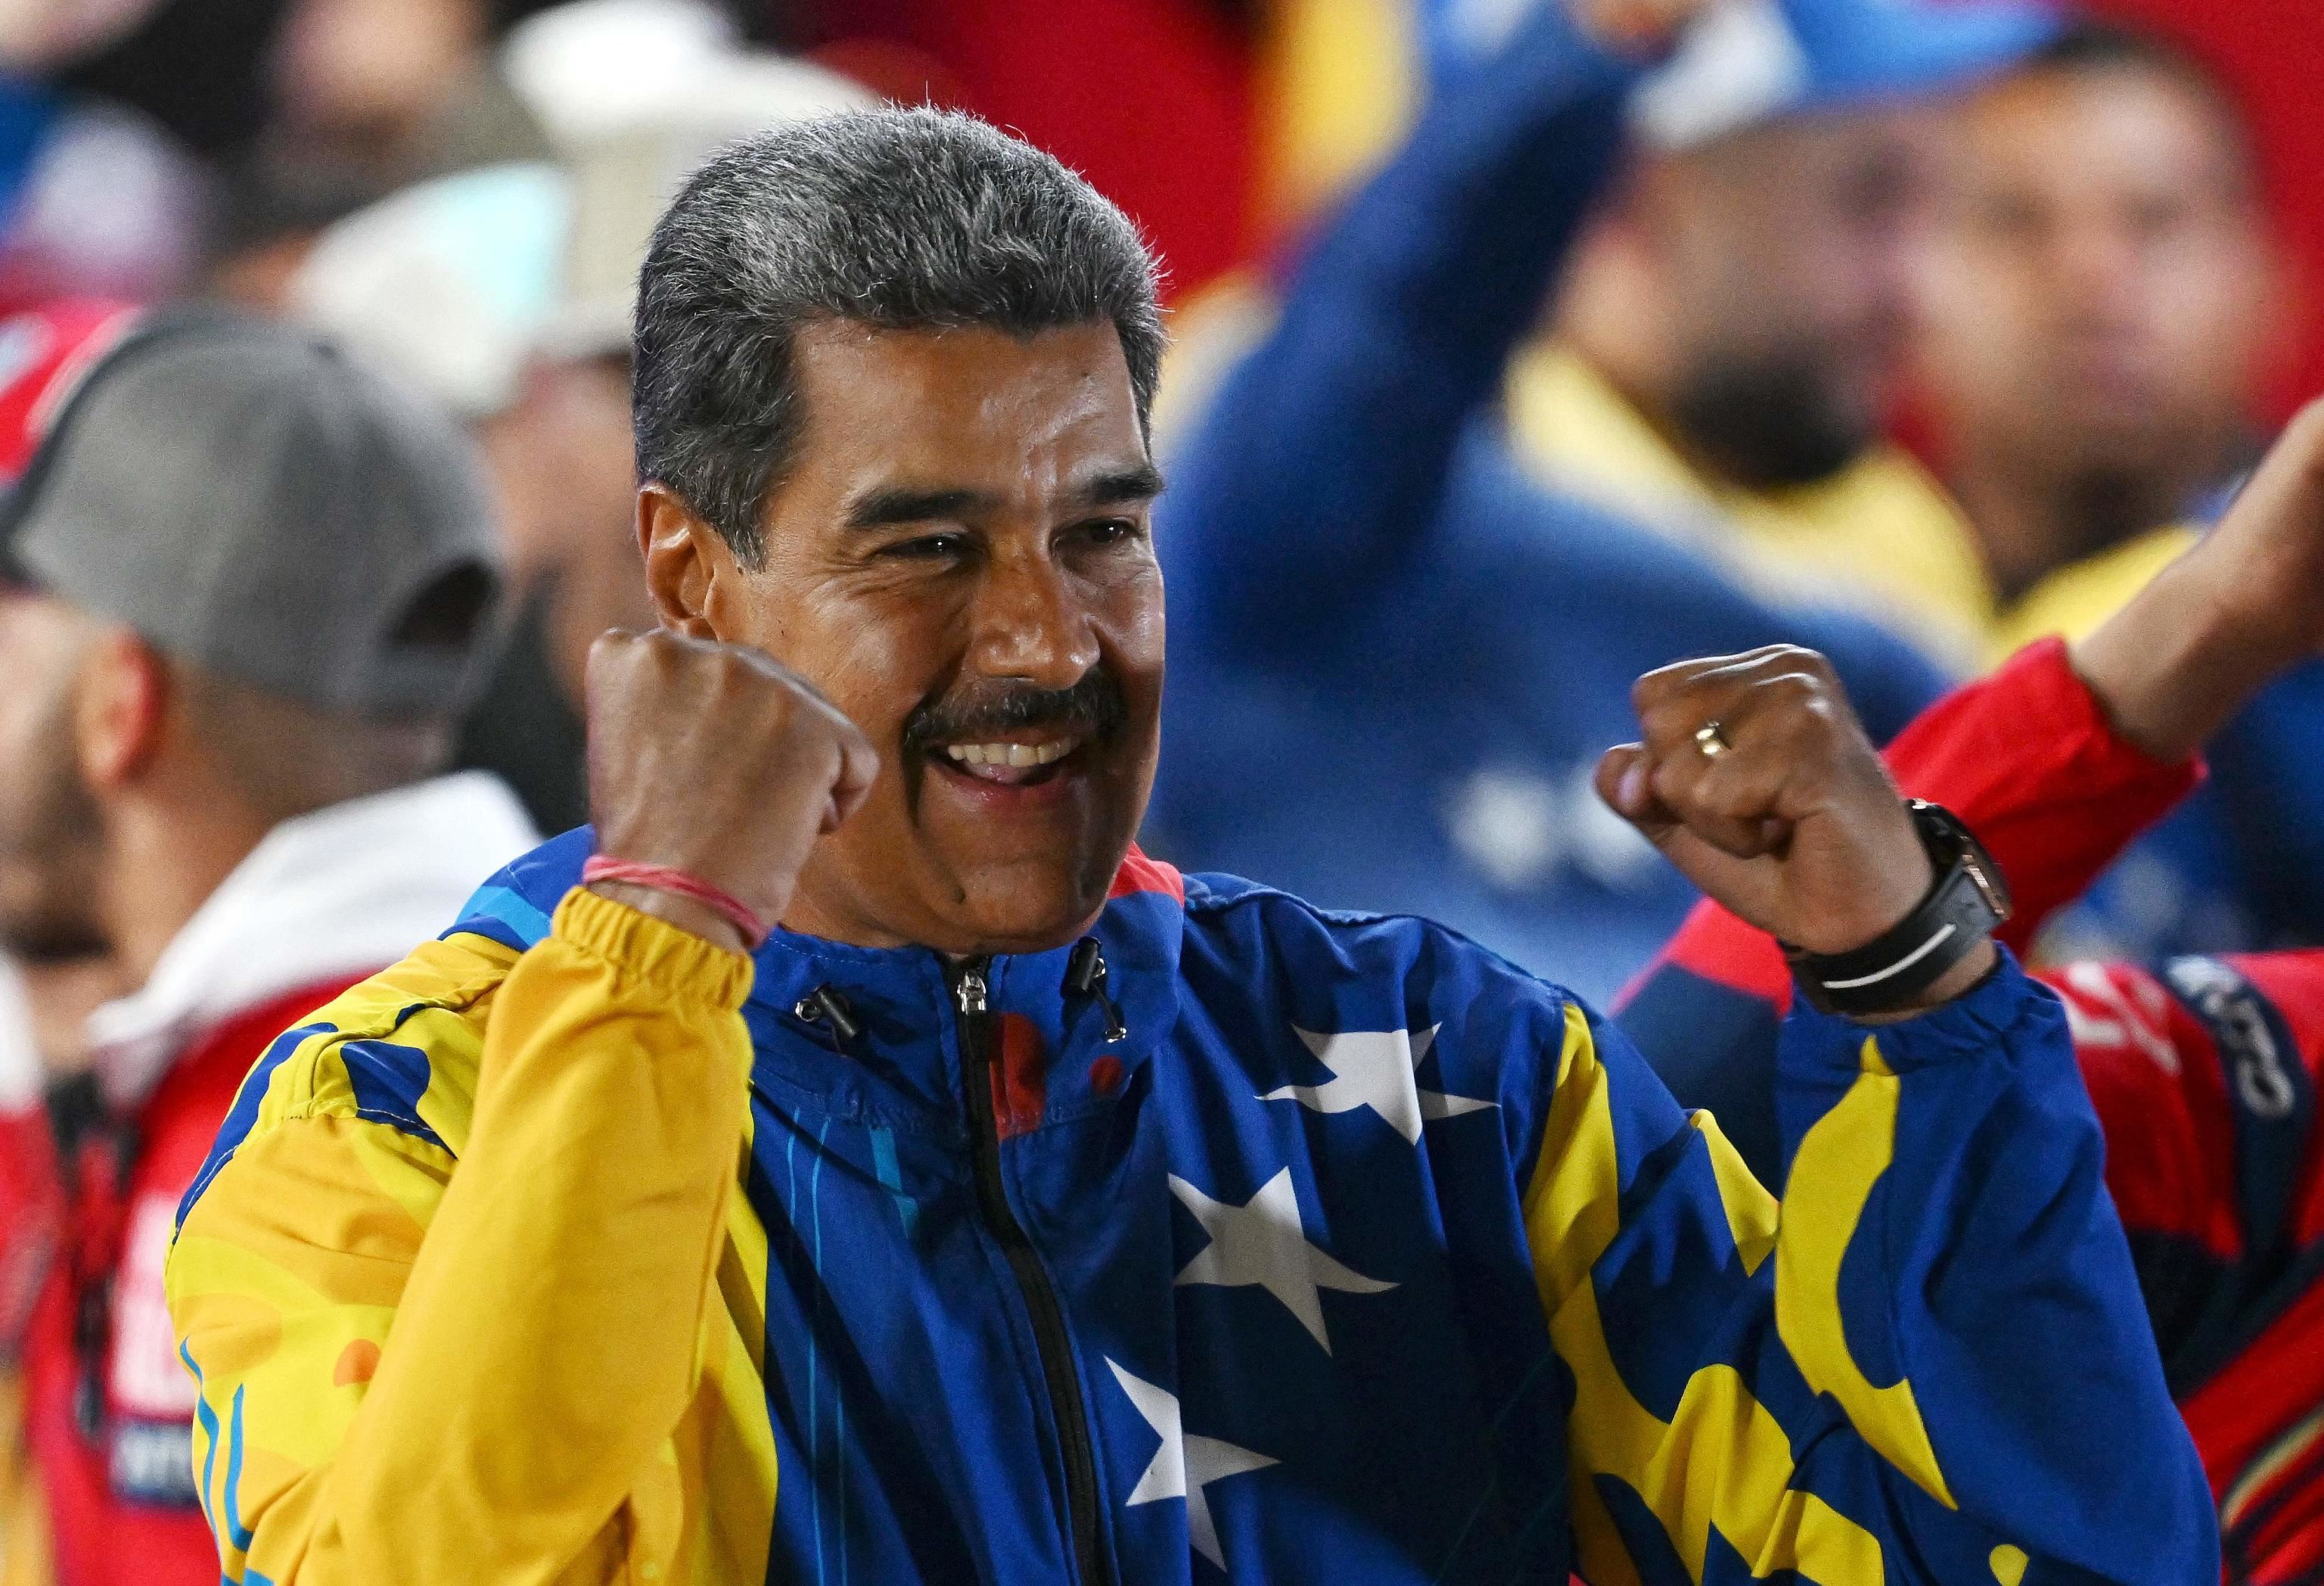 Maduro al bivio: ricontare o restare isolato. Che cosa può accadere ora